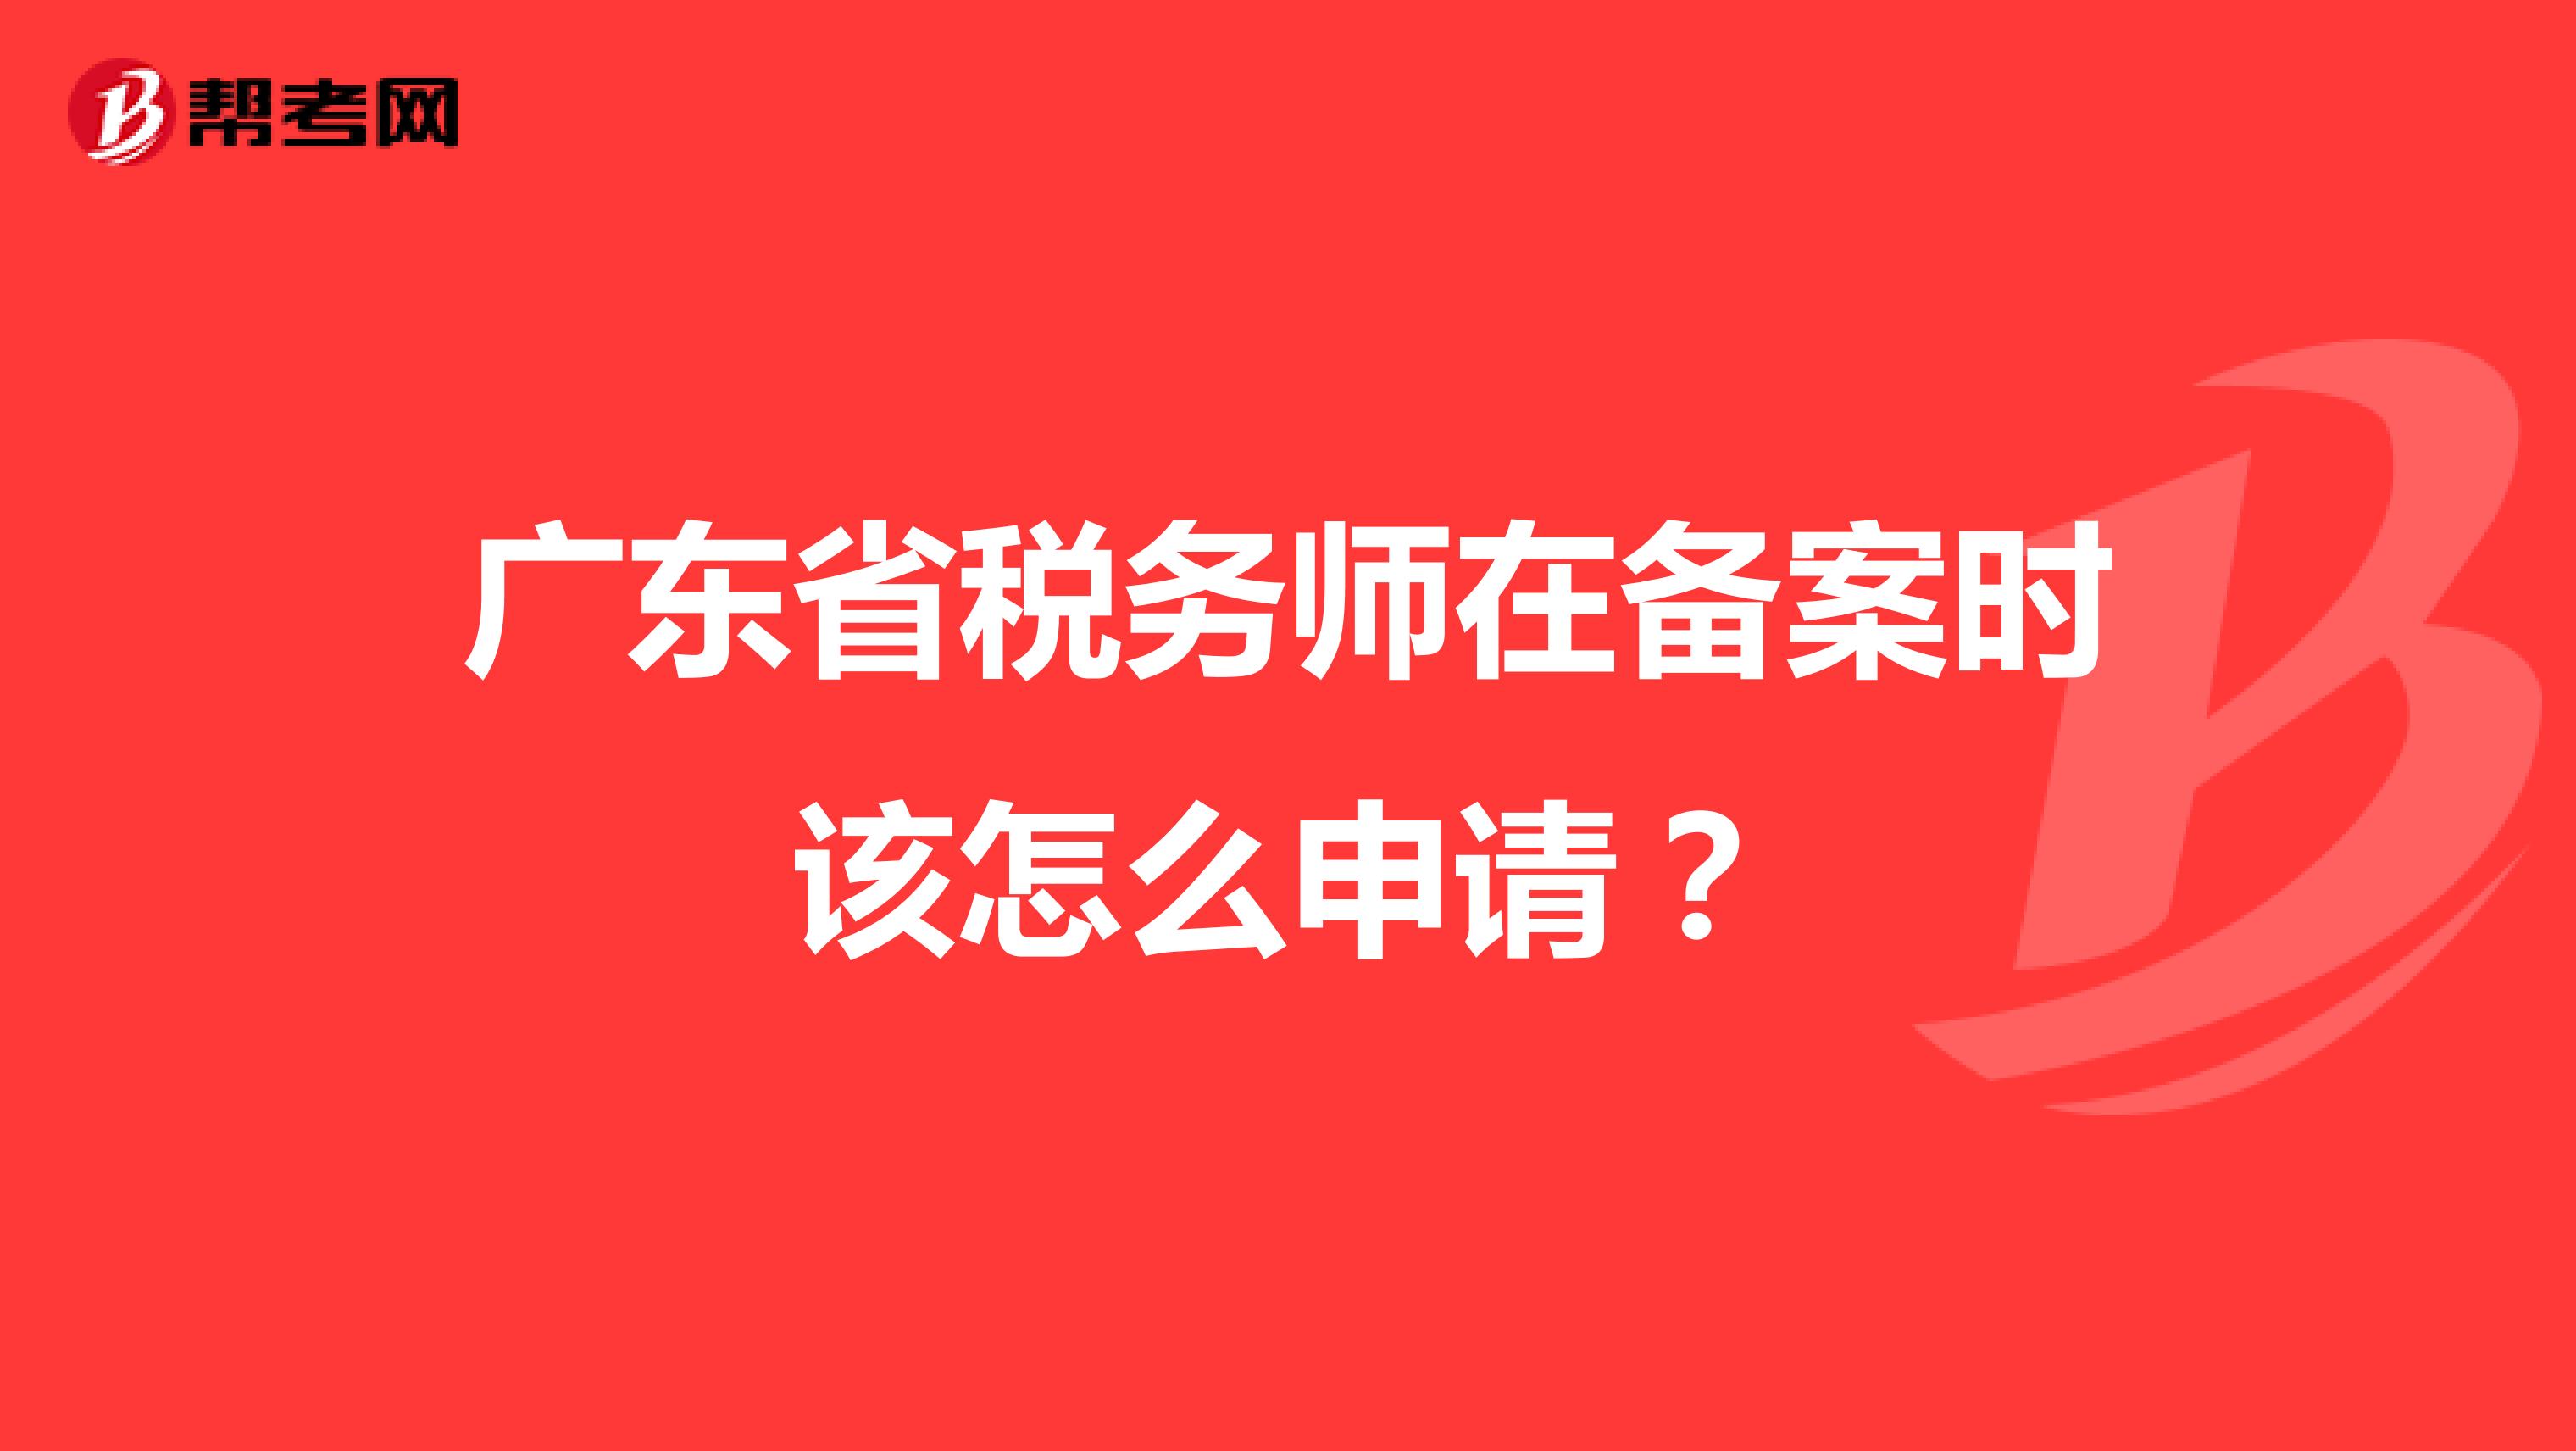 广东省税务师在备案时该怎么申请？